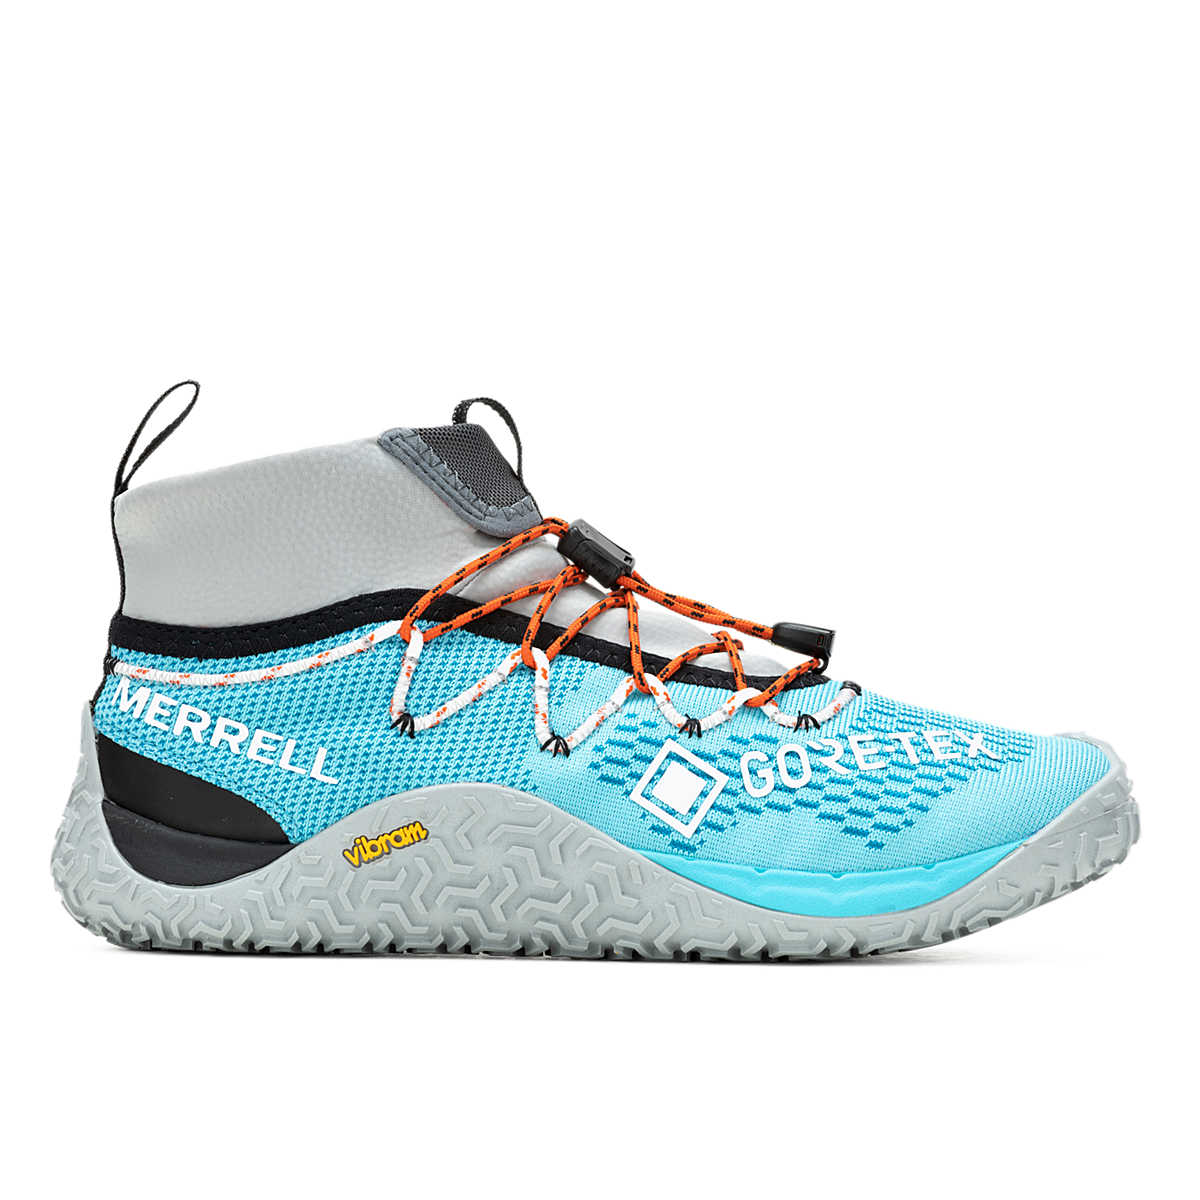 Trail Glove 7 GORE-TEX®, Atoll/Highrise, dynamic 1